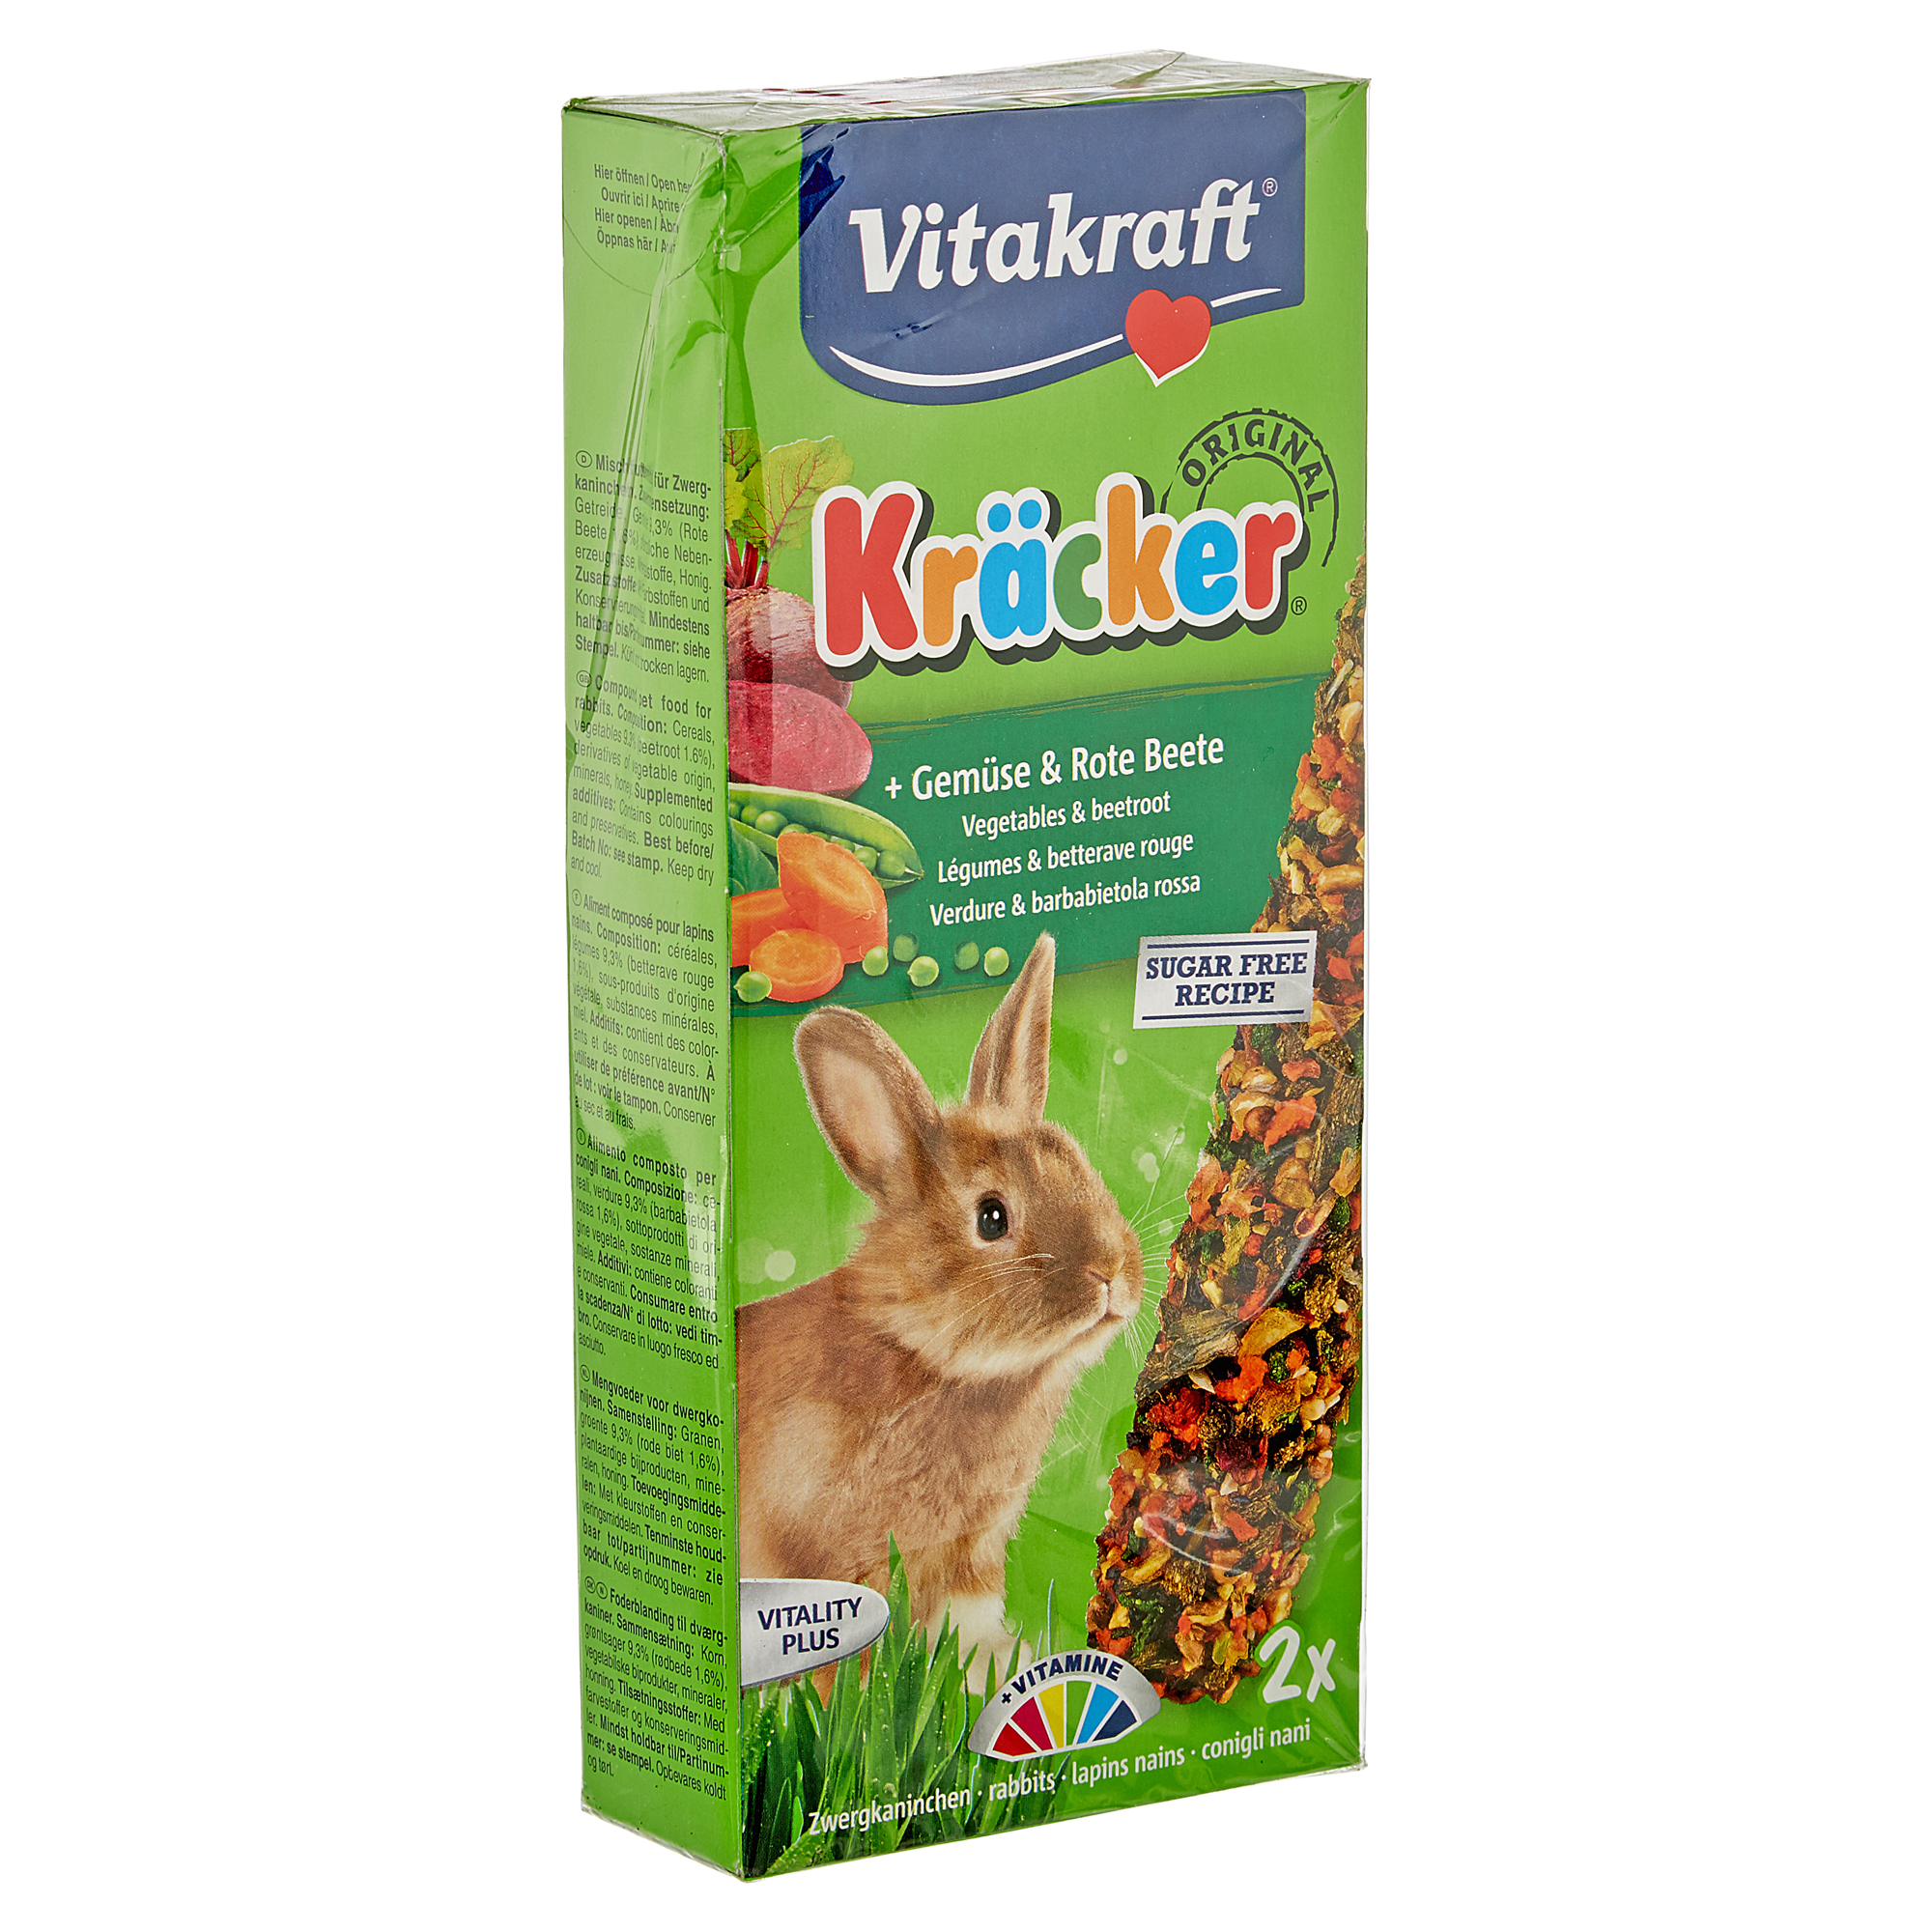 Kaninchenfutter "Kräcker® Original" Gemüse und rote Beete 2 Stück + product picture